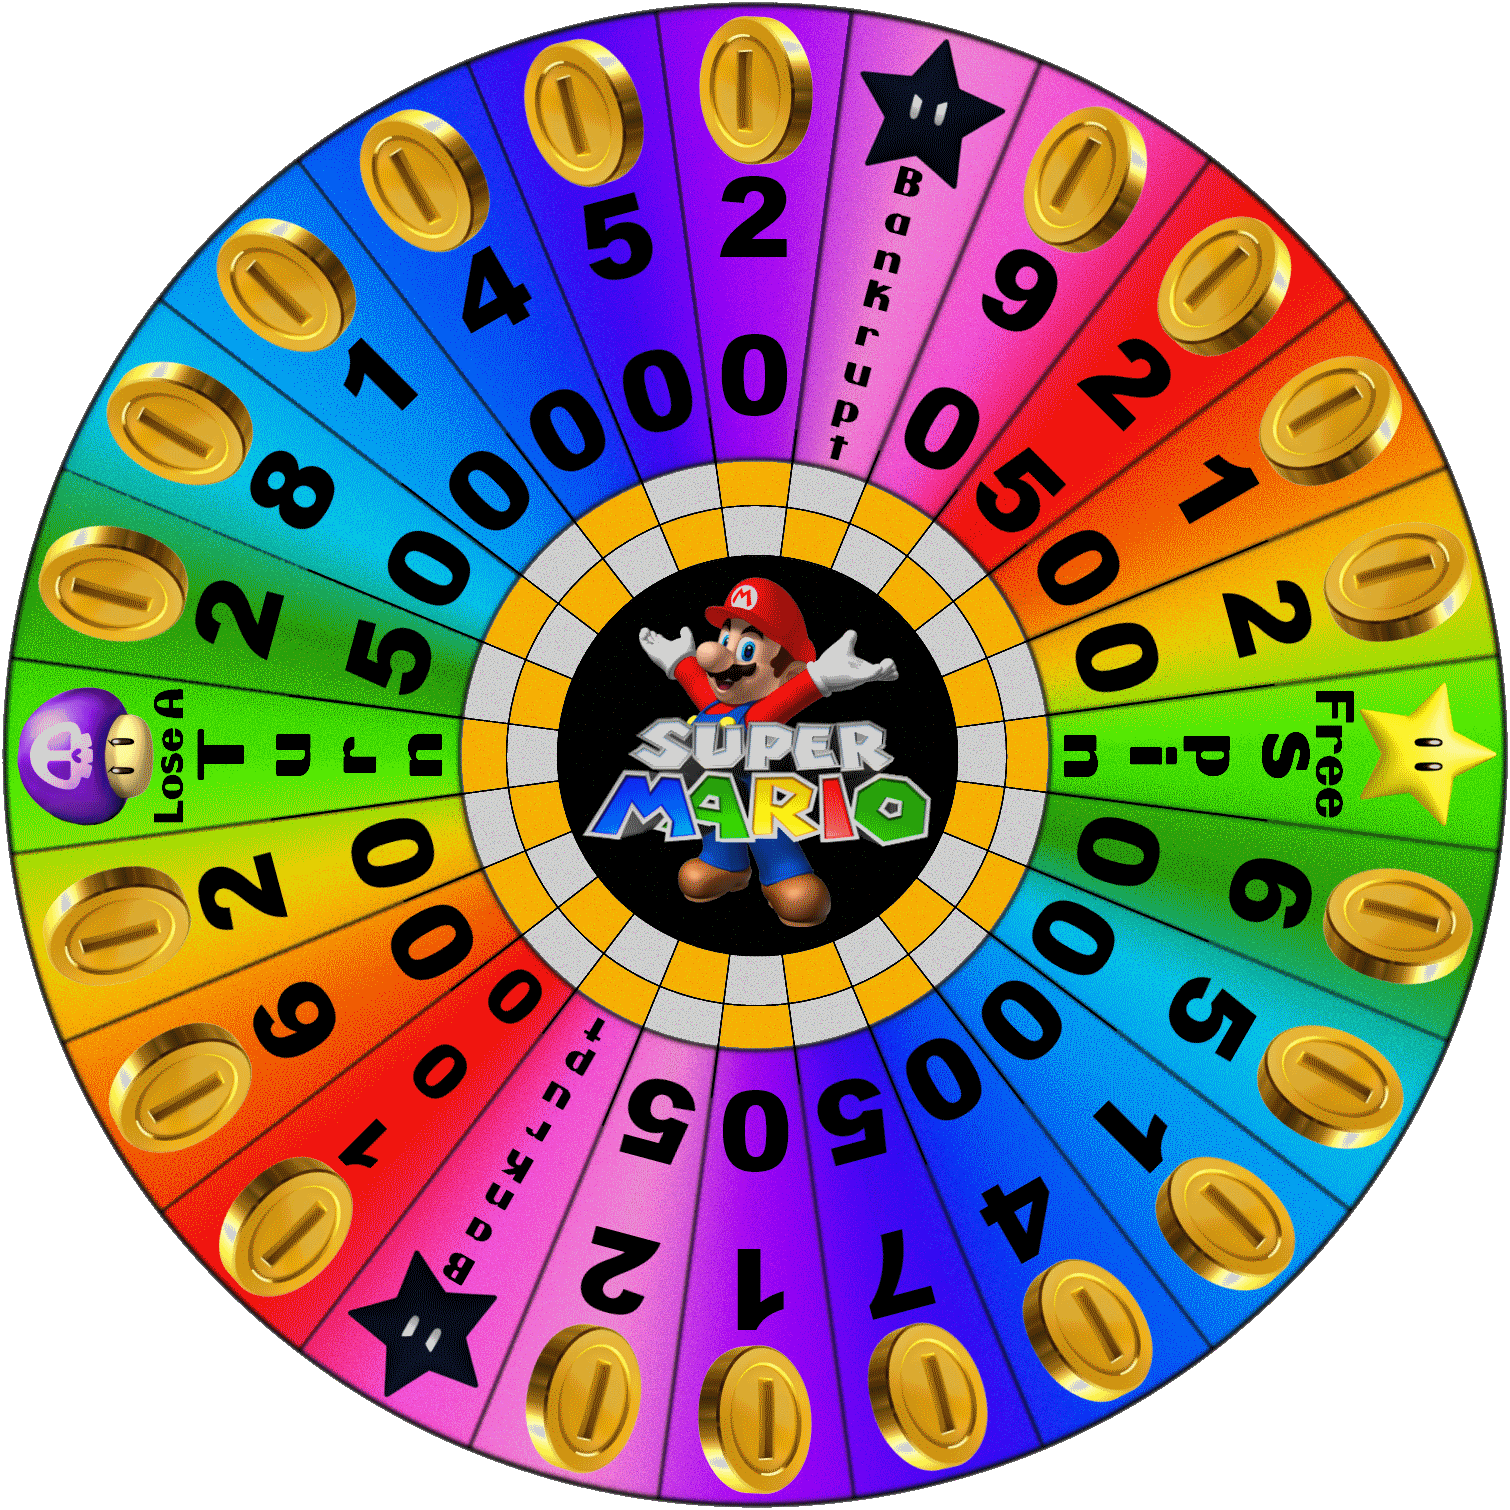 Wheel of Super Mario